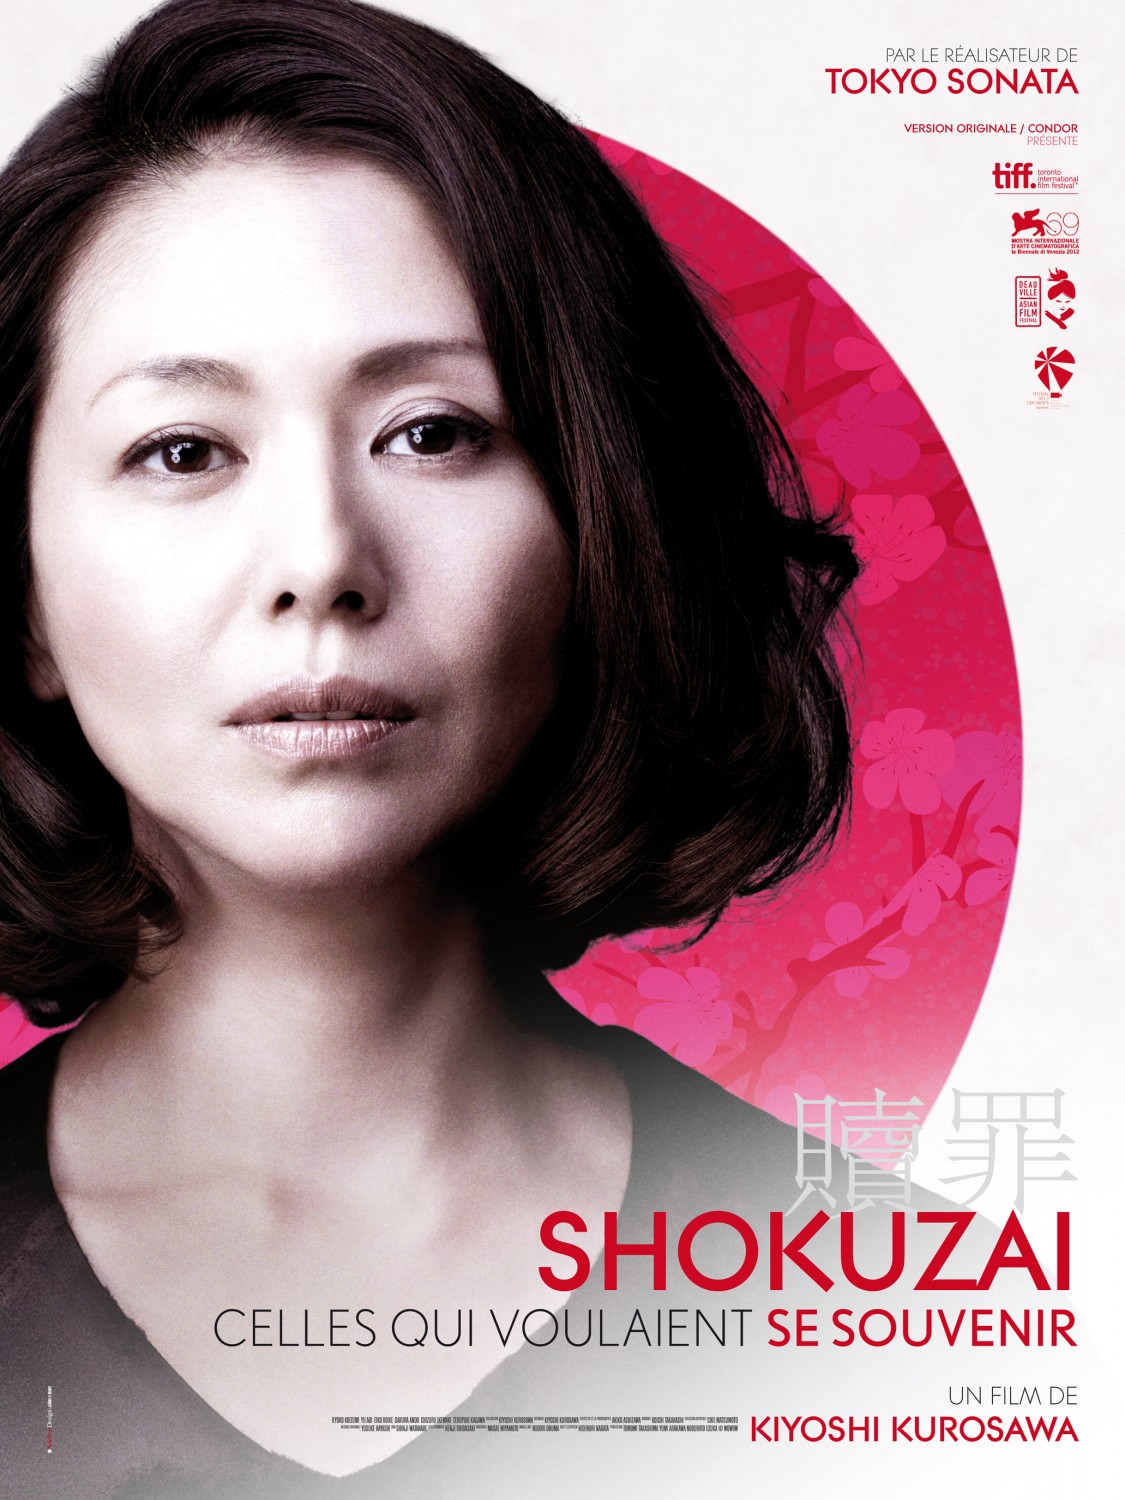 Extra Large Movie Poster Image for Shokuzai - Celles qui voulaient se souvenir (#2 of 2)